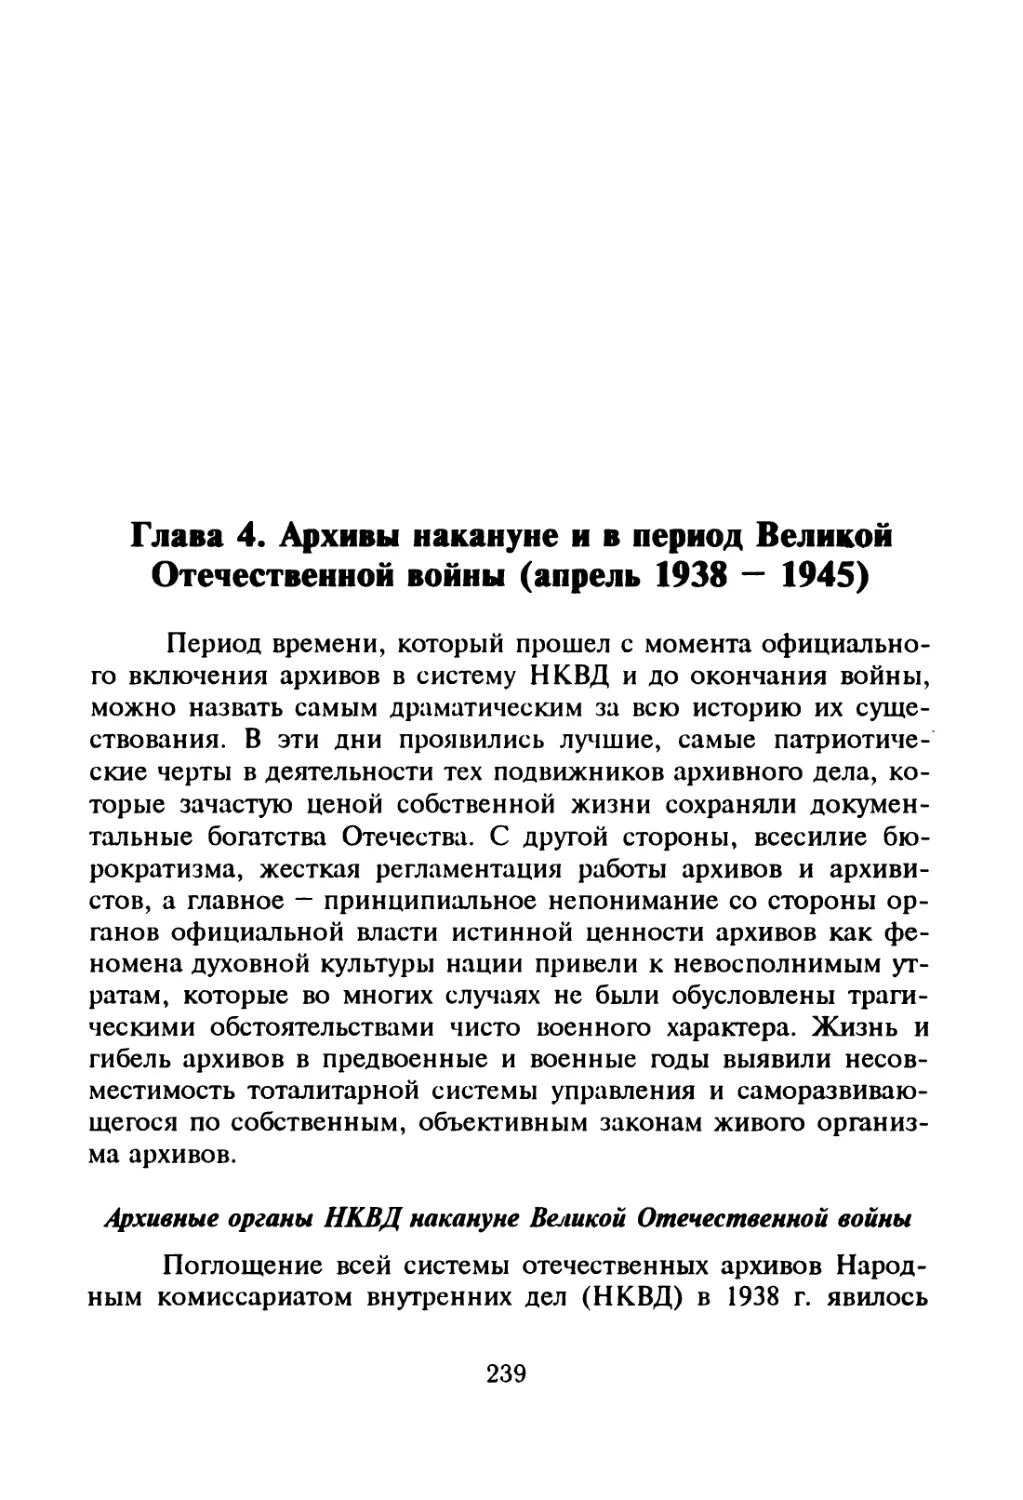 Архивные органы НКВД накануне Великой Отечественной войны